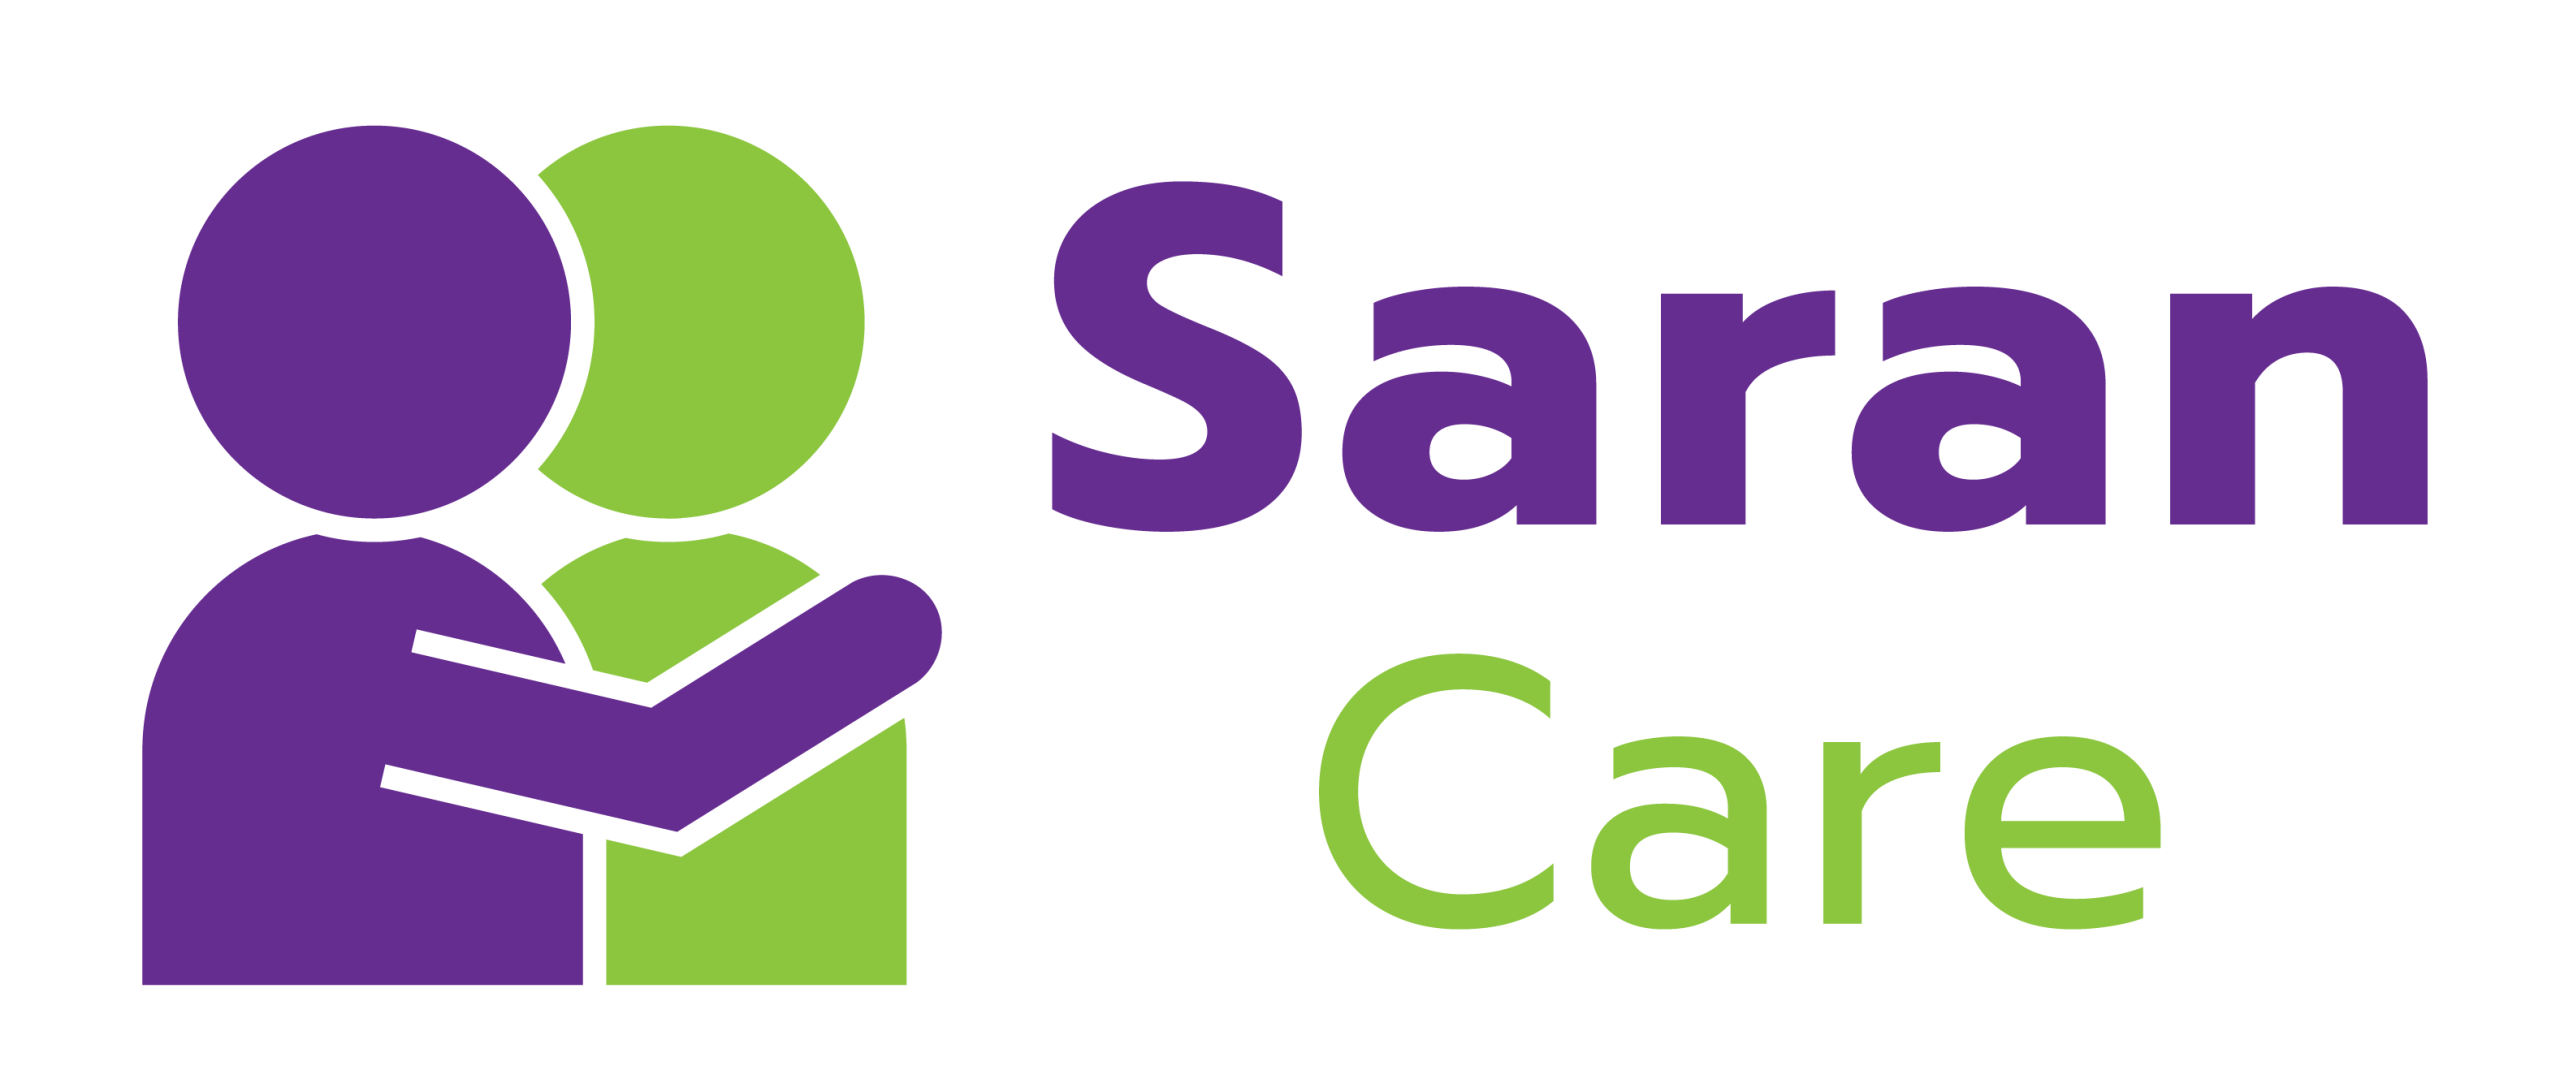 Saran Care - logo